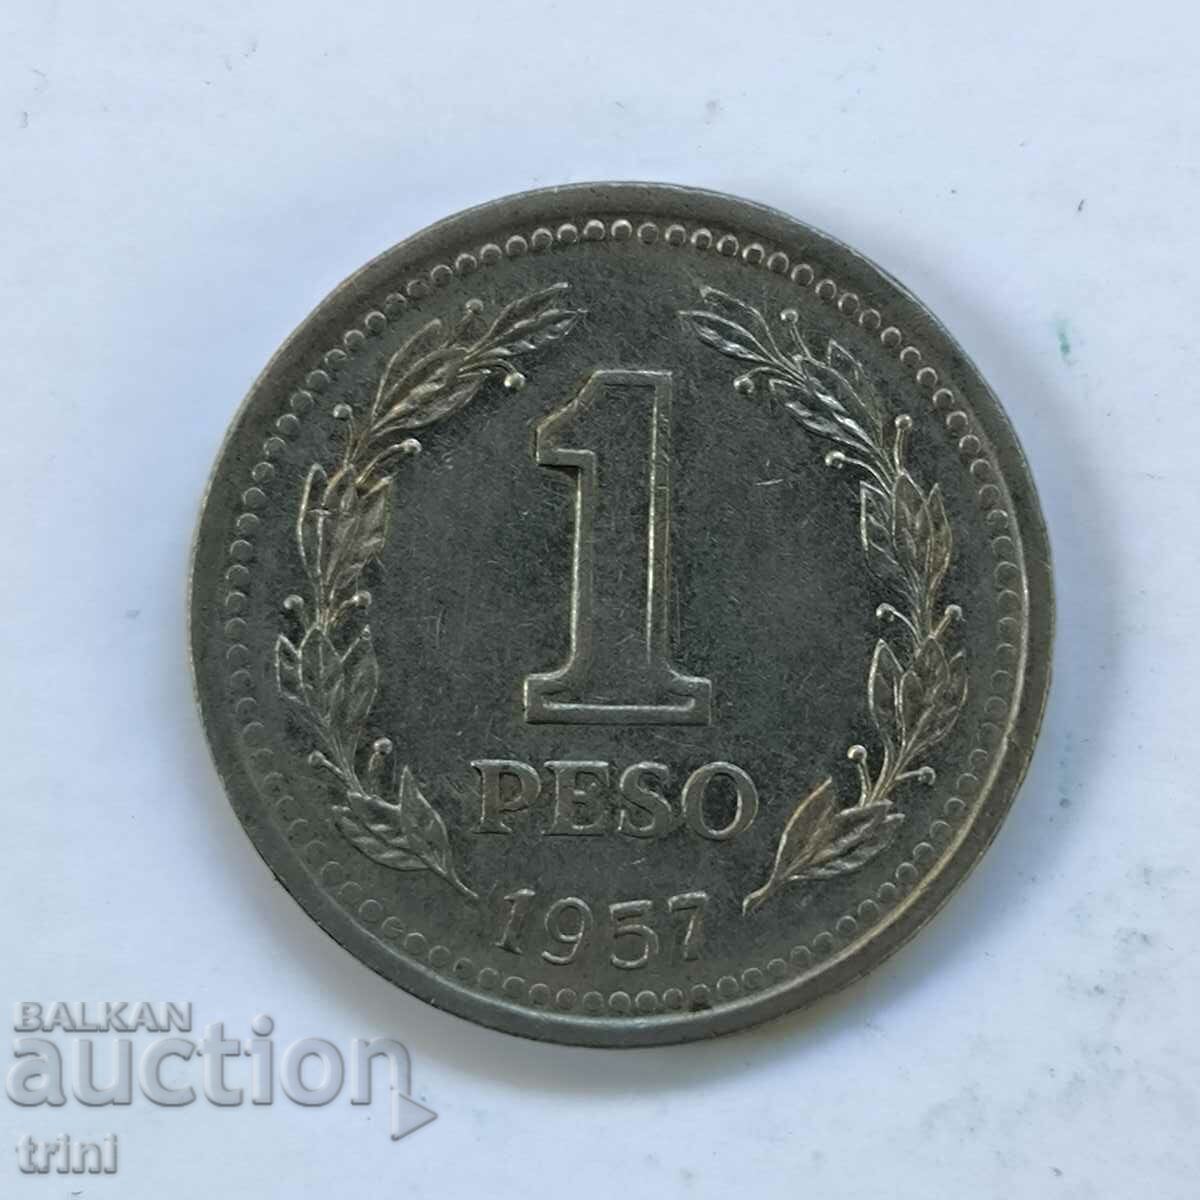 Αργεντινή 1 πέσο 1957